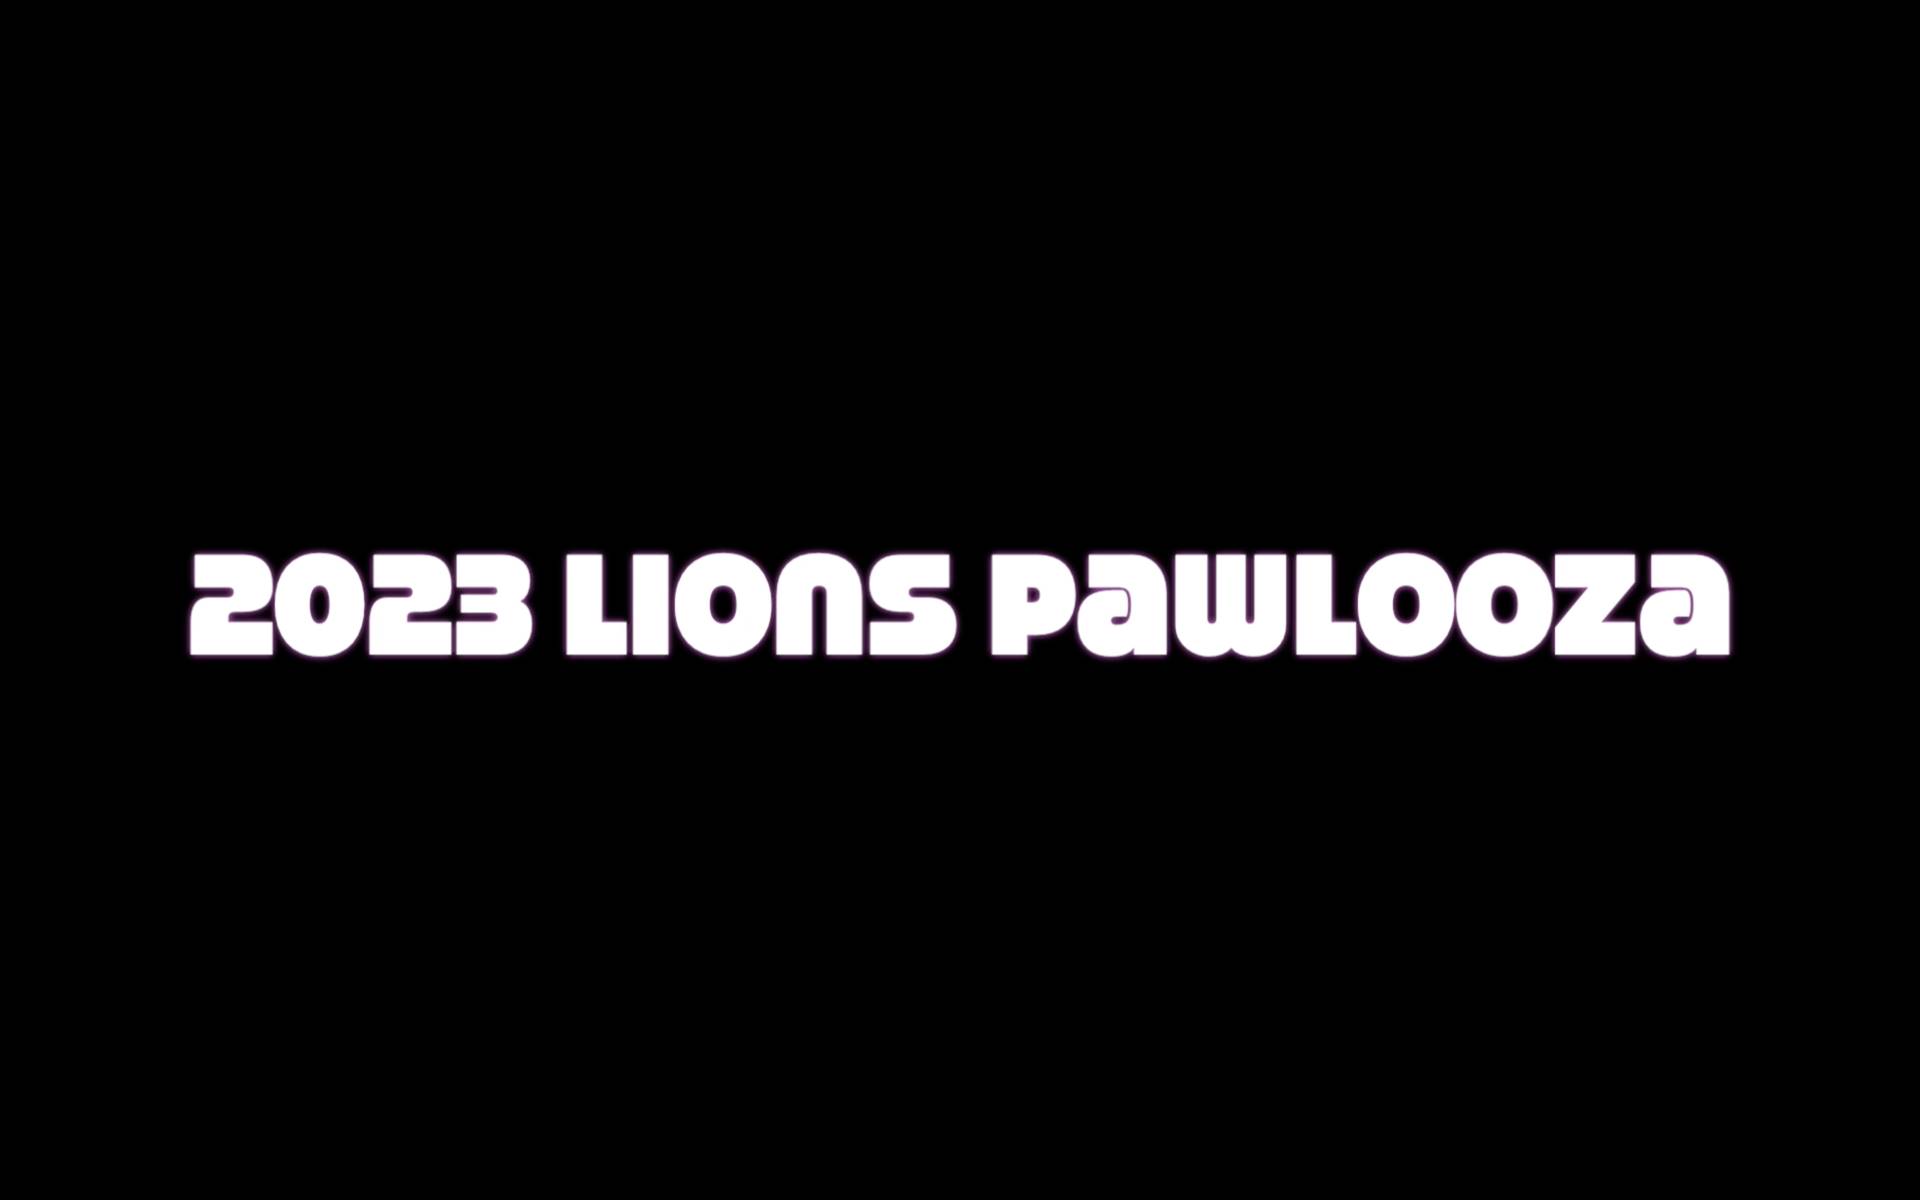 2023 Lions Pawlooza